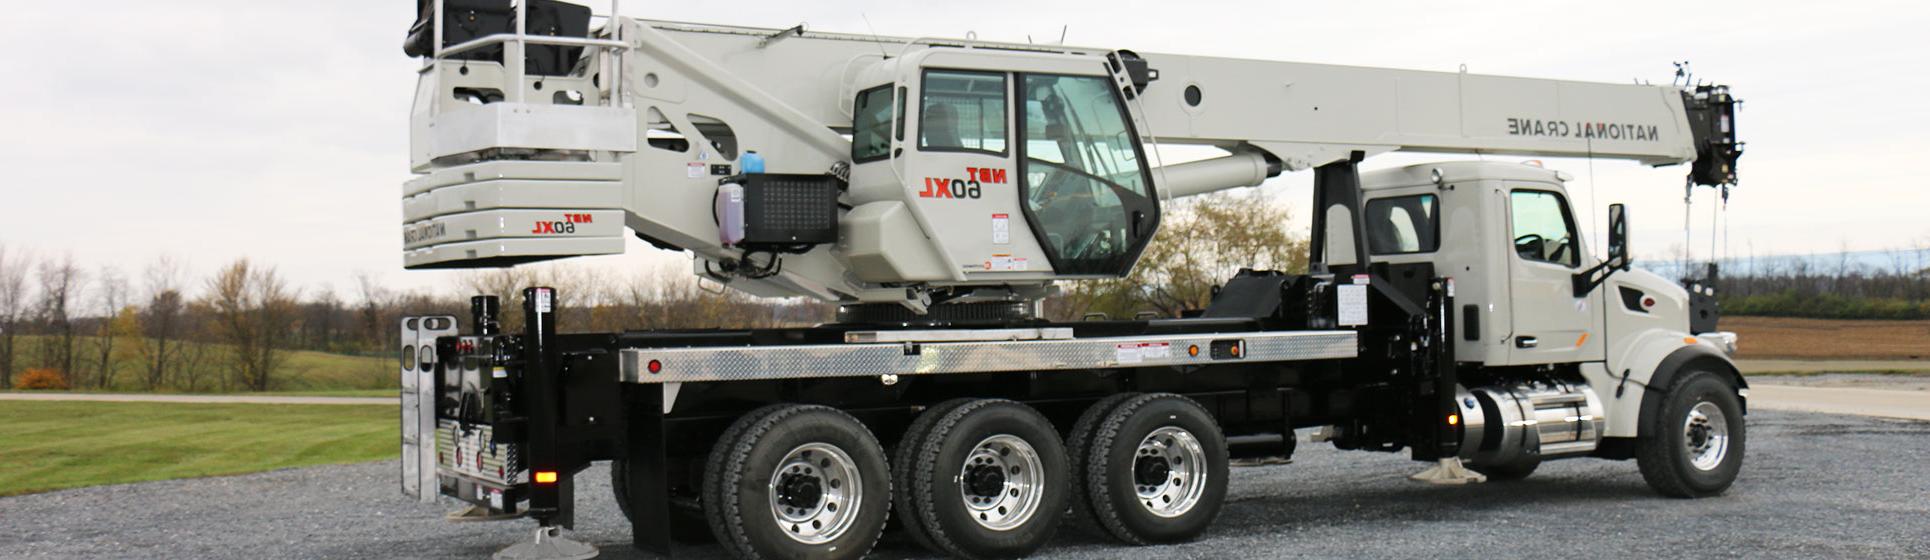 NBT60XL -摆动座臂卡车-国家起重机范围